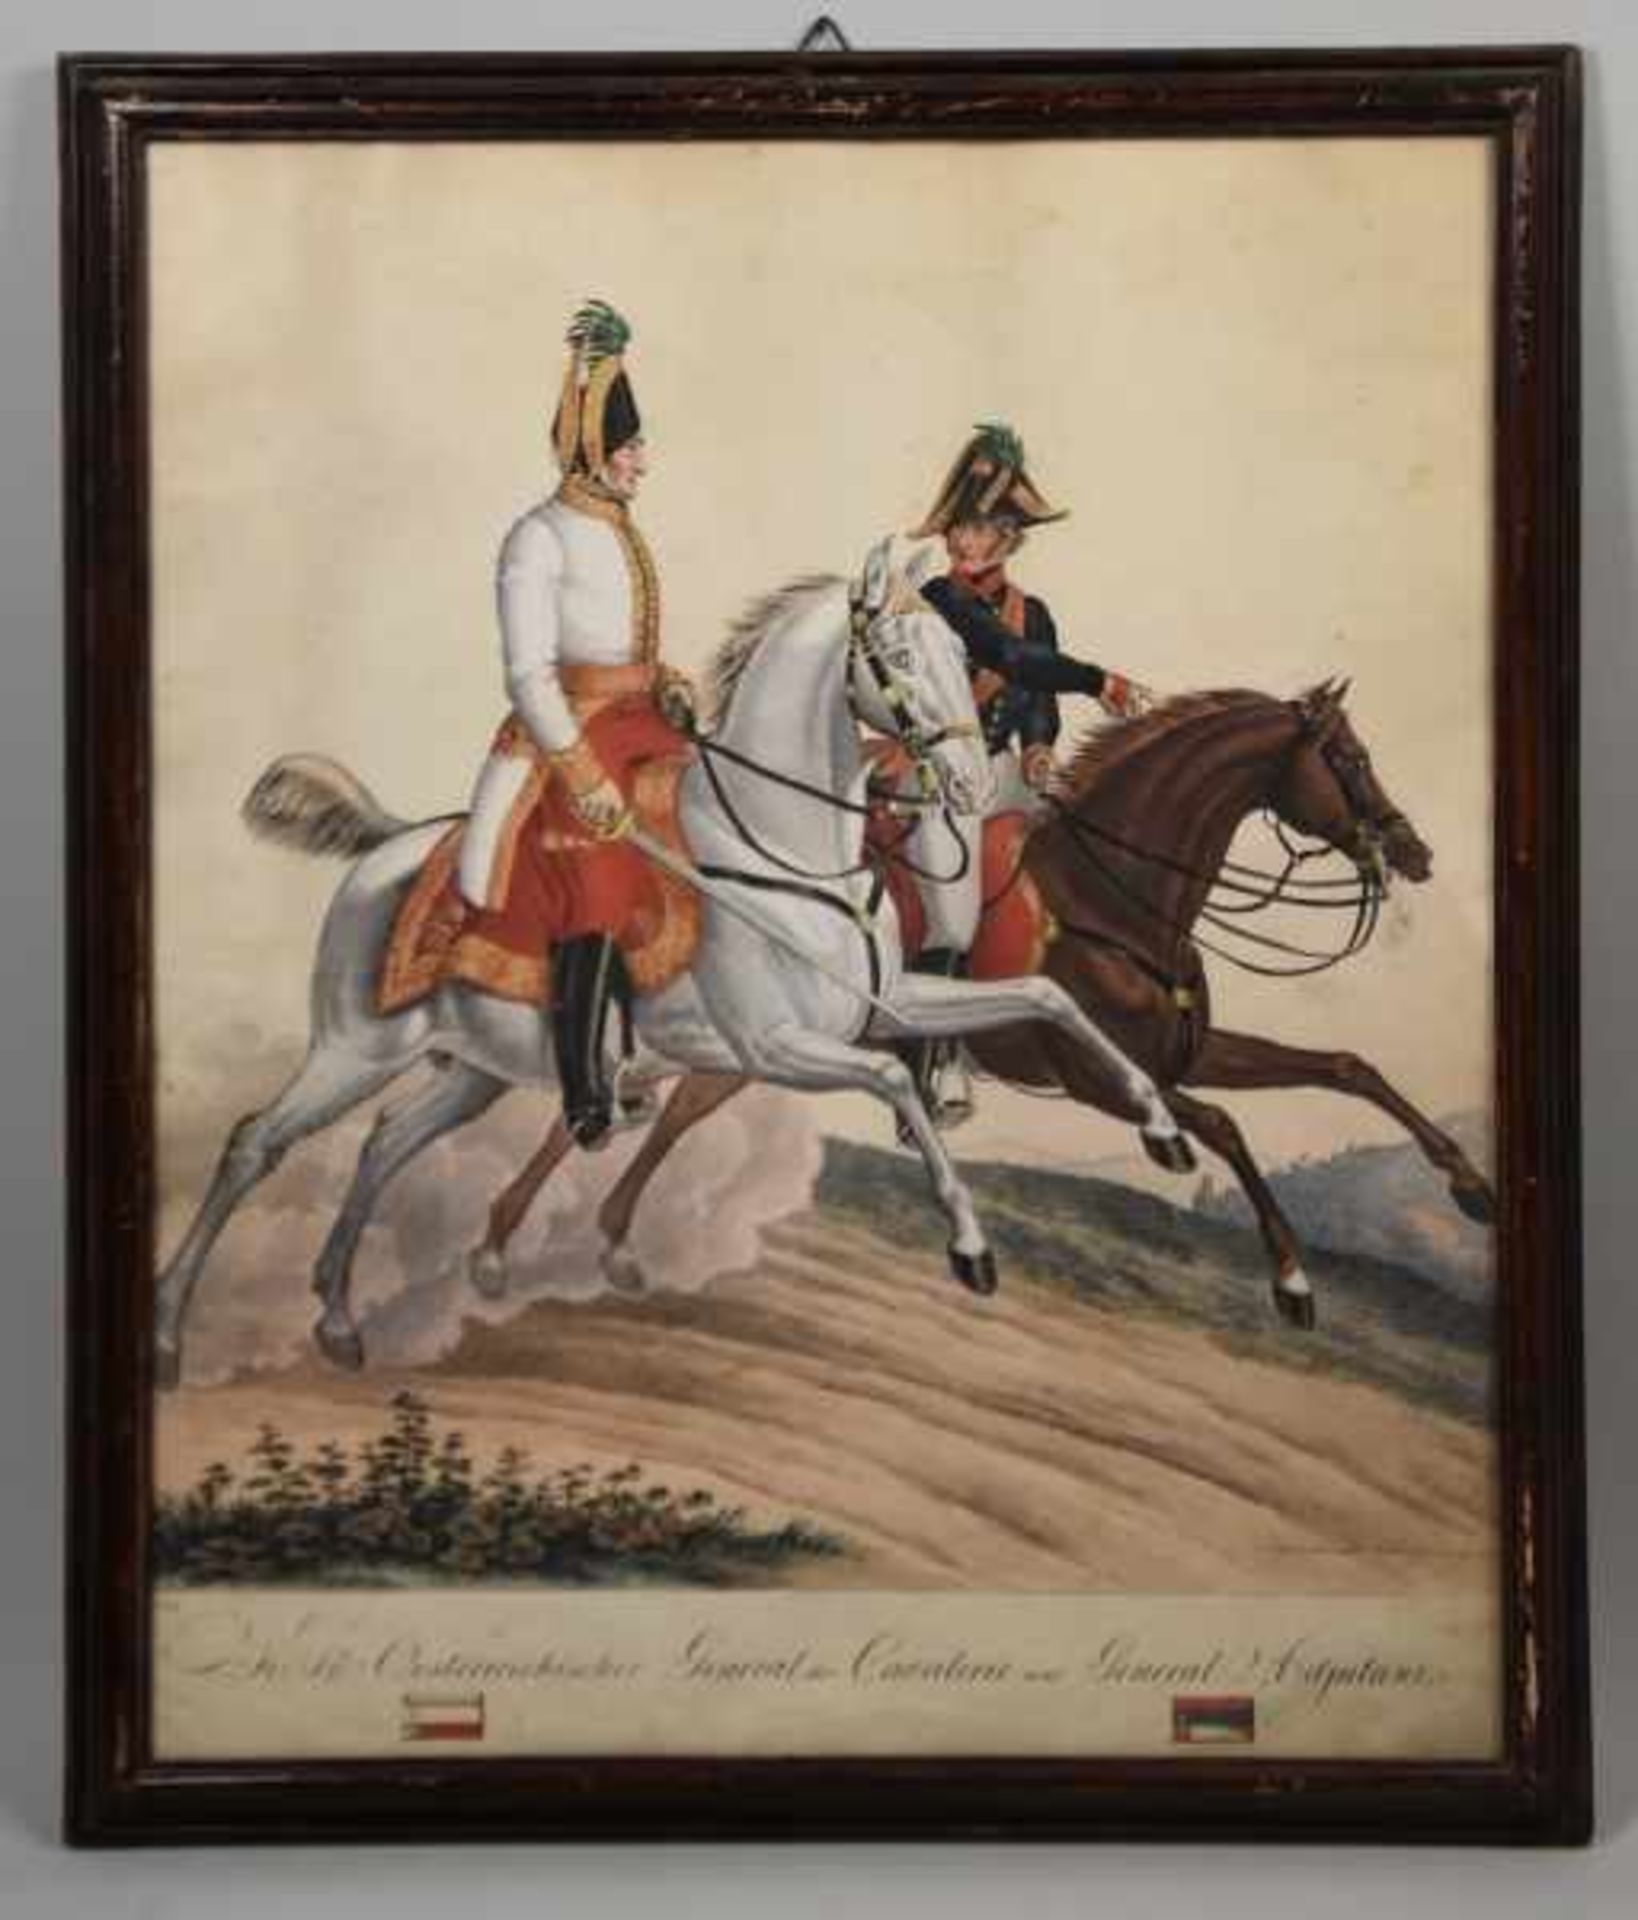 MILITÄR "K.K. Österreichischer Adel der Cavalerie und General Adjutant", Darstellung eines - Bild 2 aus 4